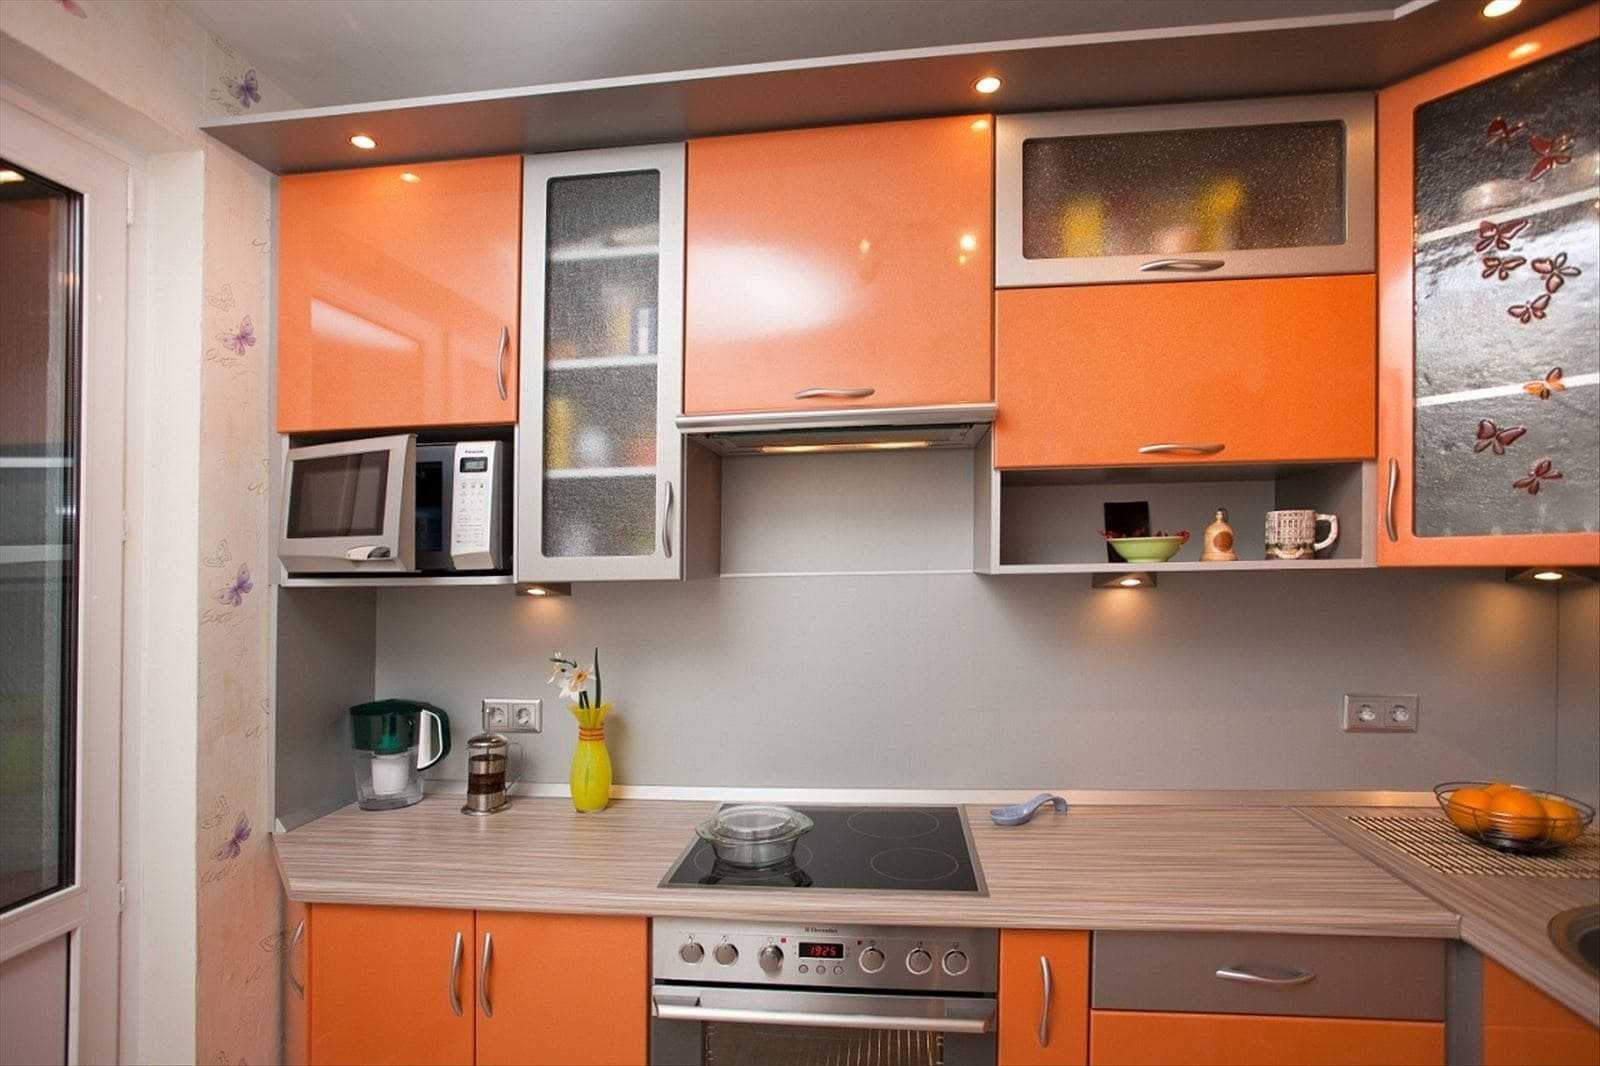 Персиковые кухни (61 фото): нюансы выбора кухонного гарнитура цвета персика в интерьер, сочетание персикового с другими тонами, варианты дизайна